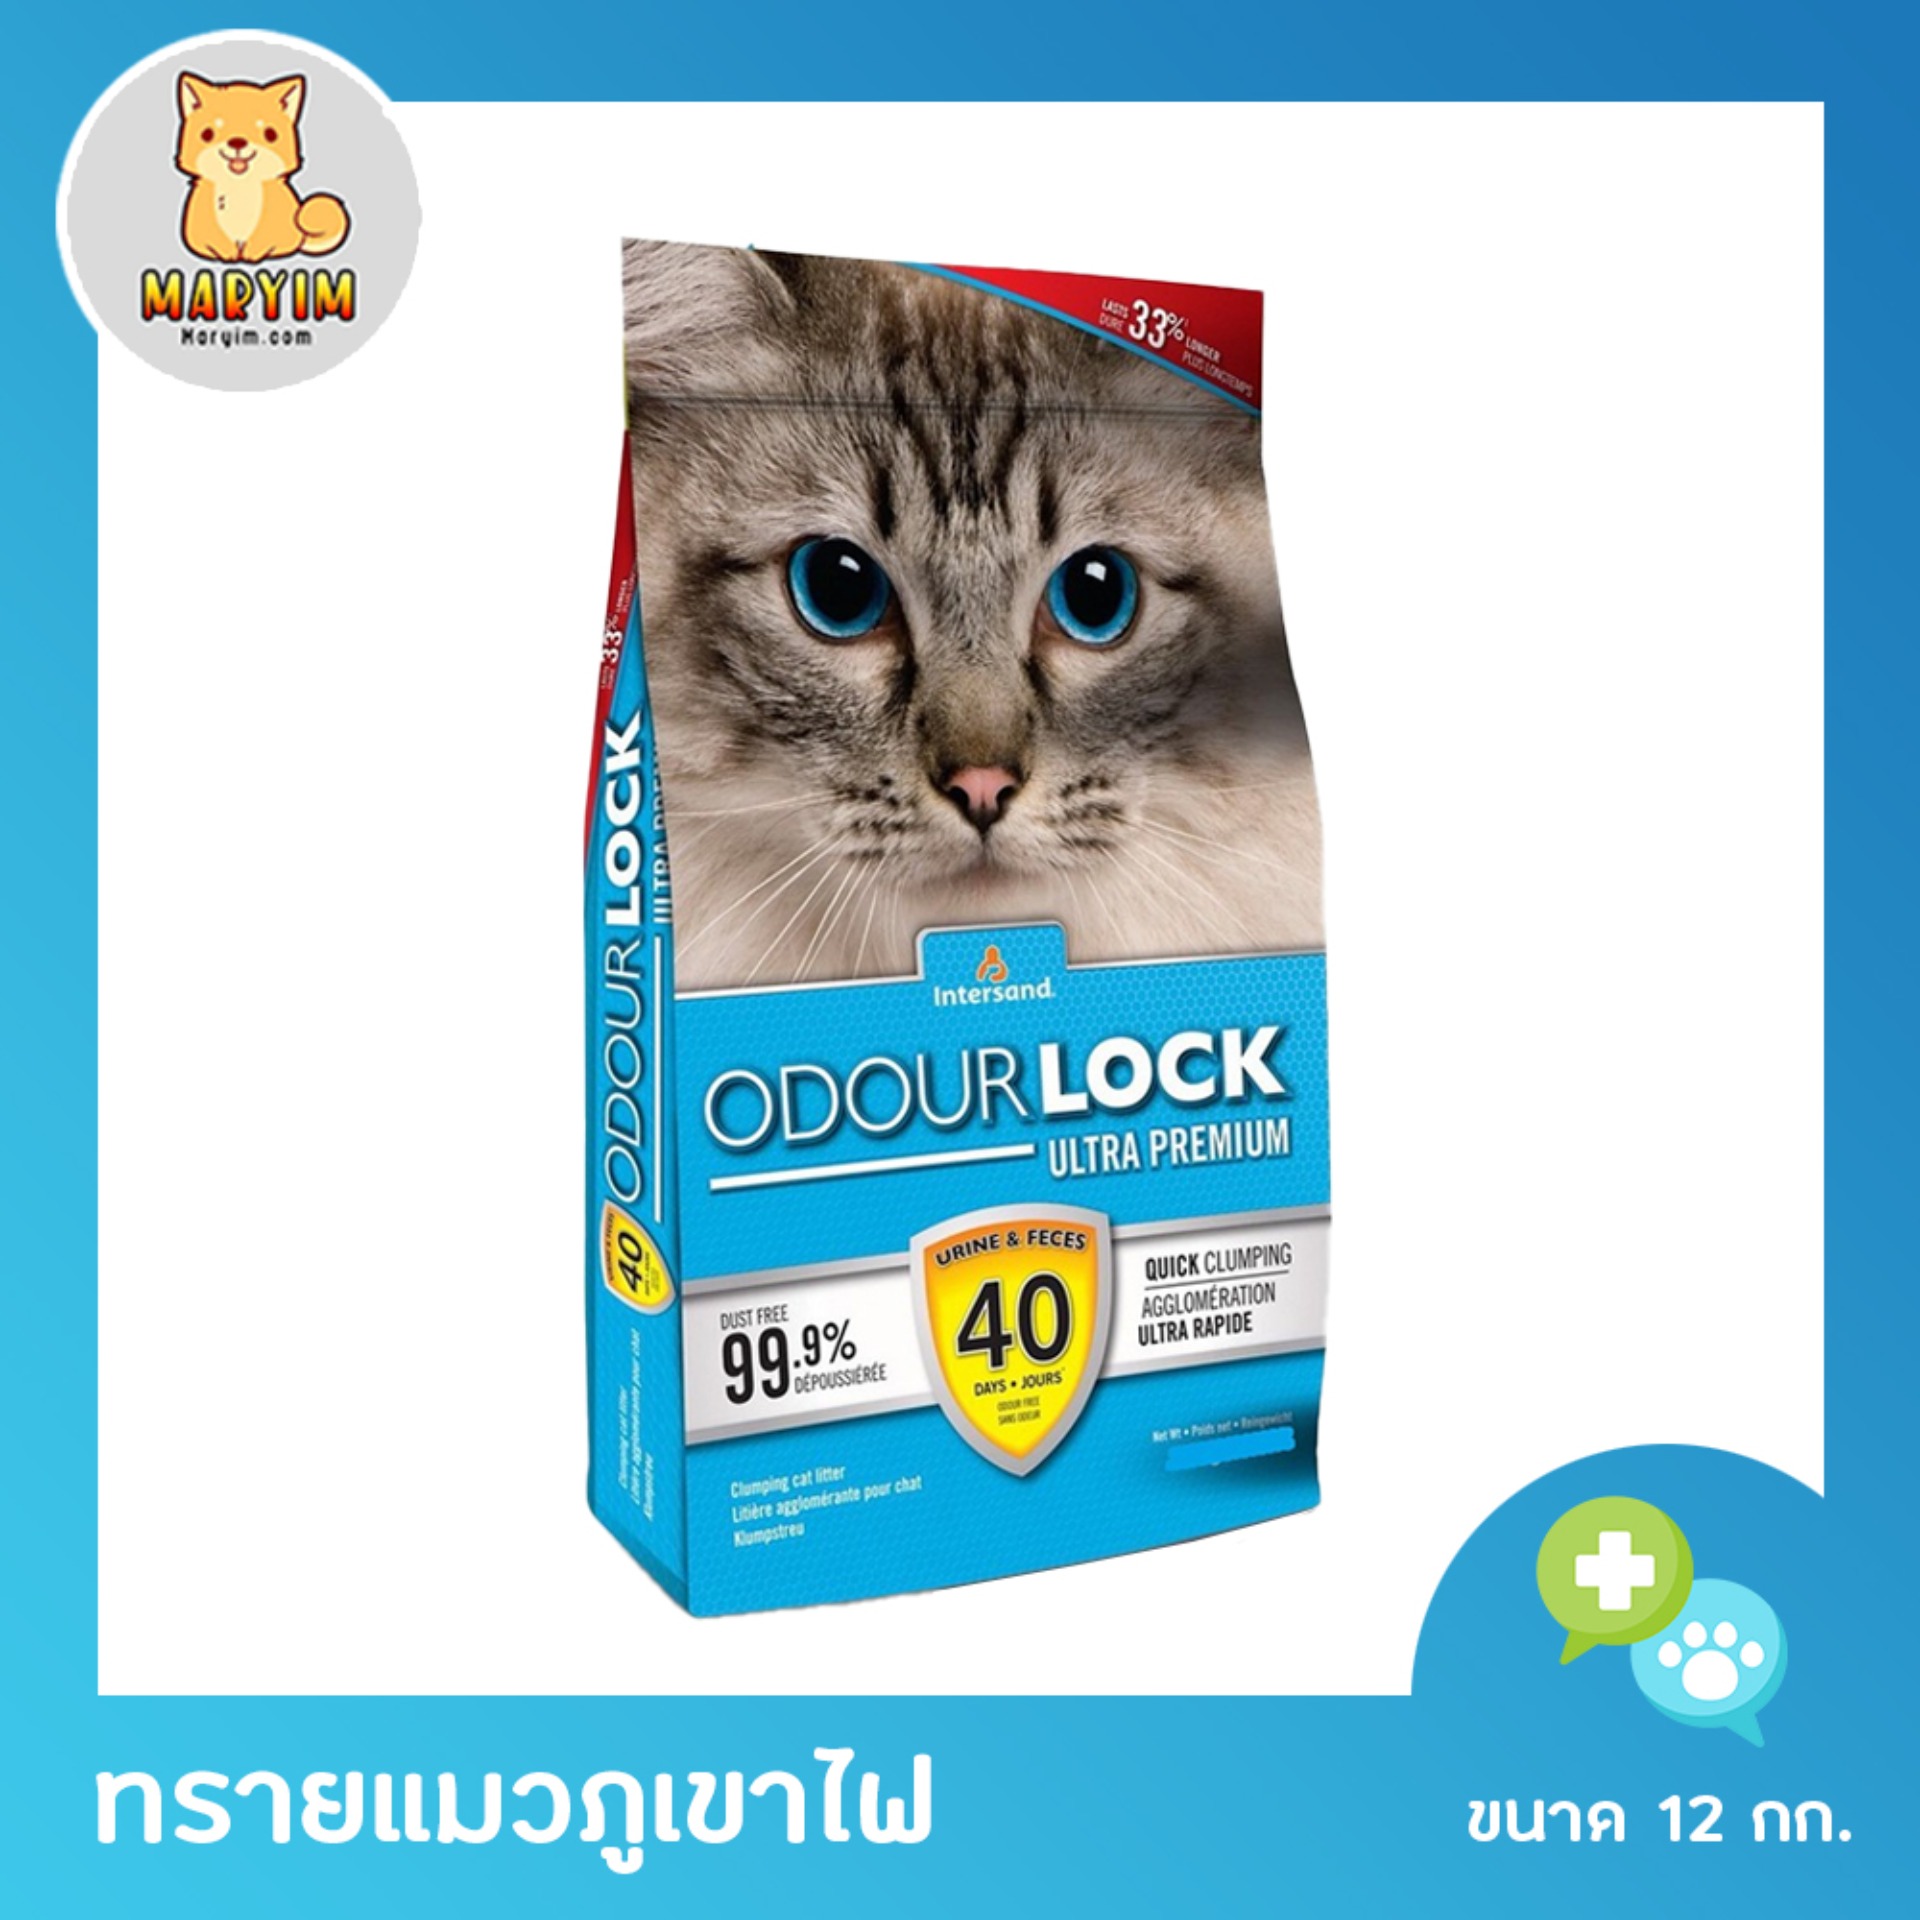 Odour Lock 12 Kg. ทรายแมวภูเขาไฟ ไร้ฝุ่น 99.9% จับตัวเป็นก้อนเร็ว เก็บกลิ่น สำหรับแมวทุกสายพันธุ์ 12 กิโลกรัม